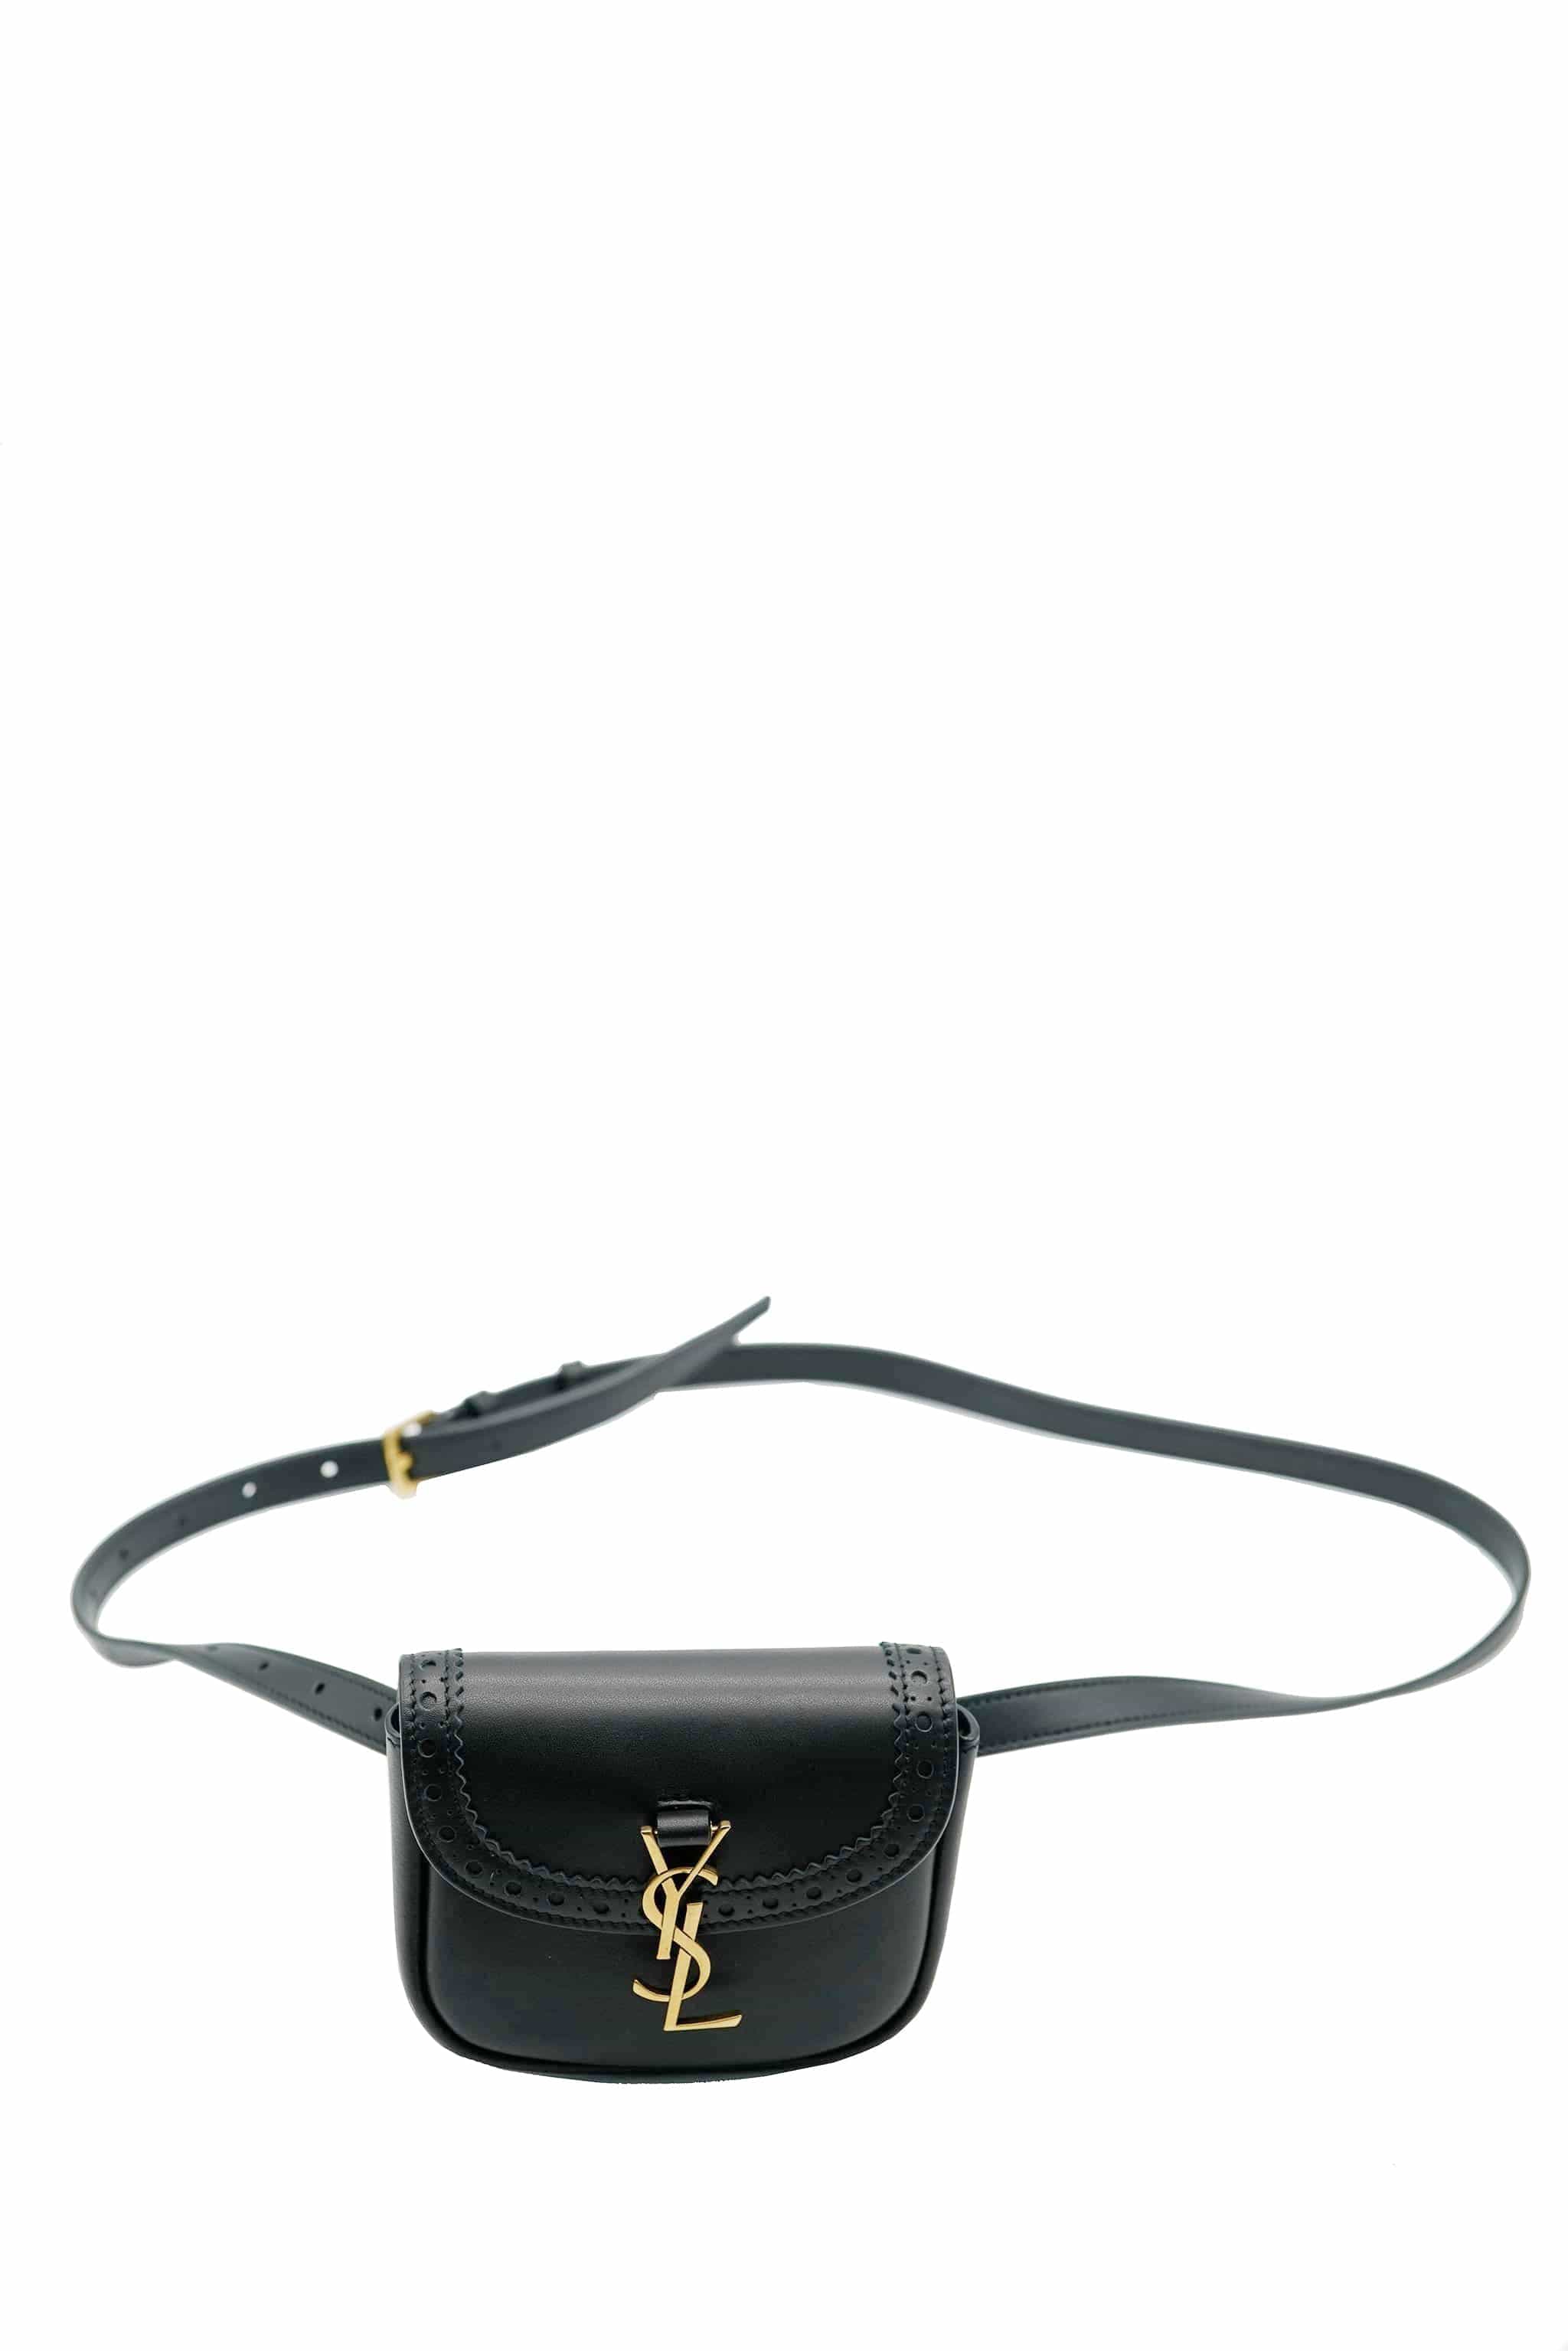 YSL black belt bag smooth leather ASL5798